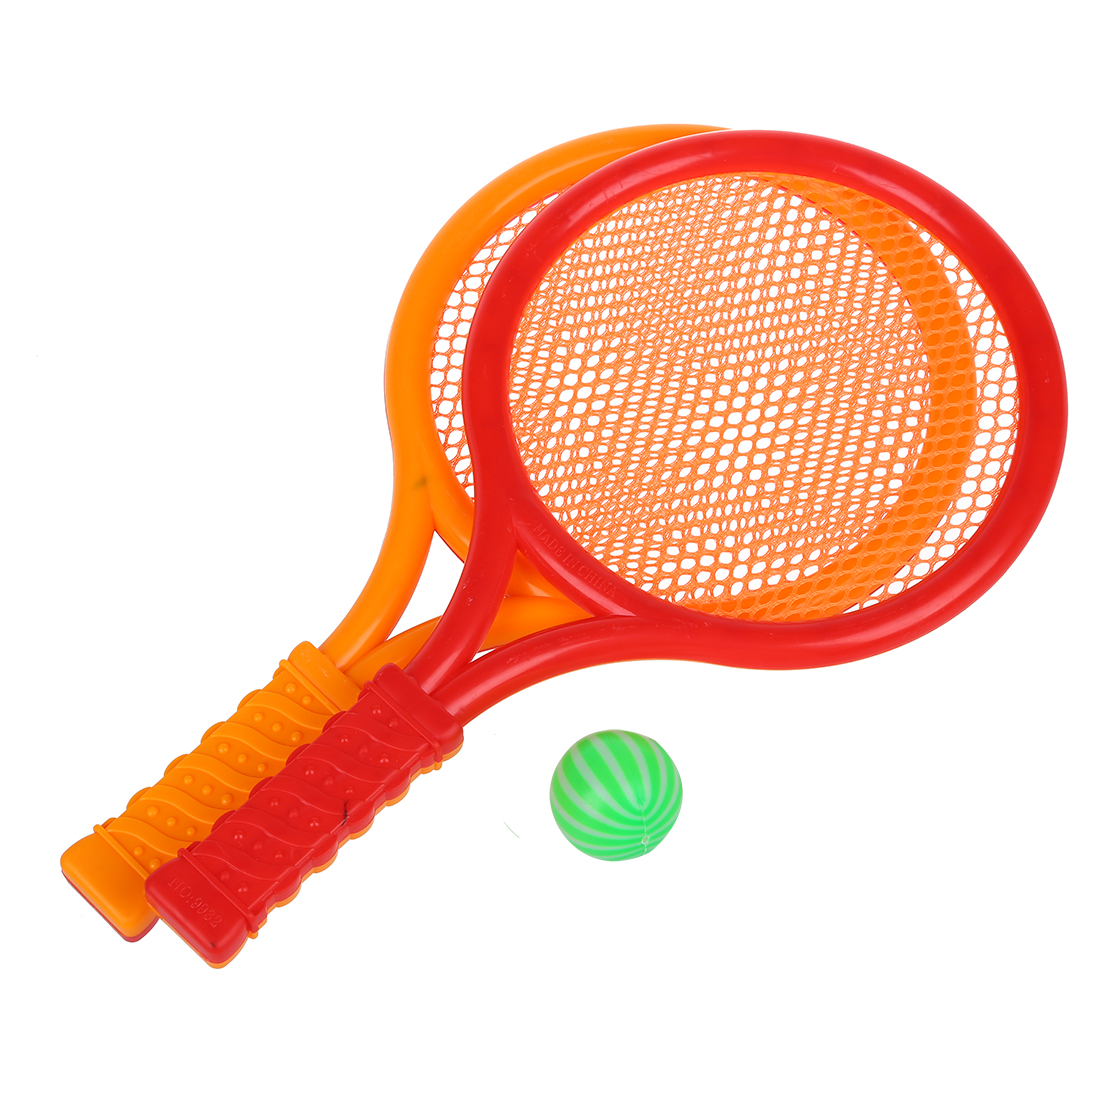 upload Kirmizi cocuk cocuk oyun oyun plastik tenis badminton raketi spor oyuncak seti hediye imgs